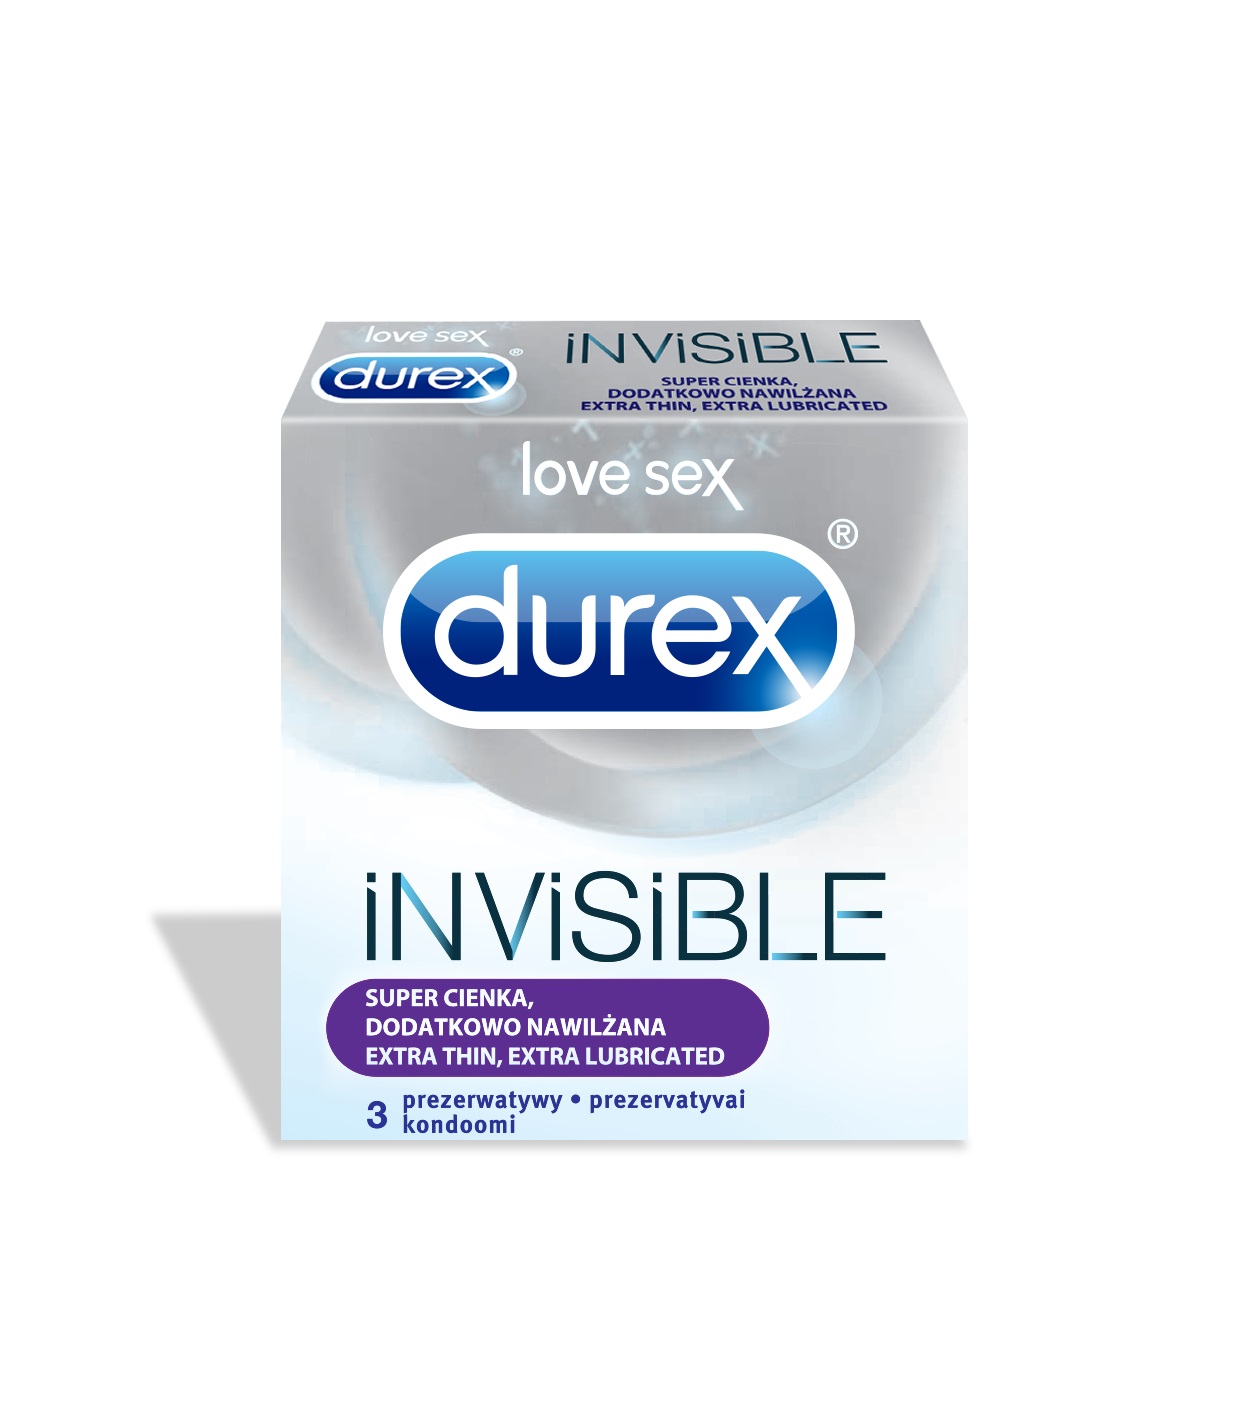 Invisible prezerwatywy dodatkowo nawil?ane 3szt